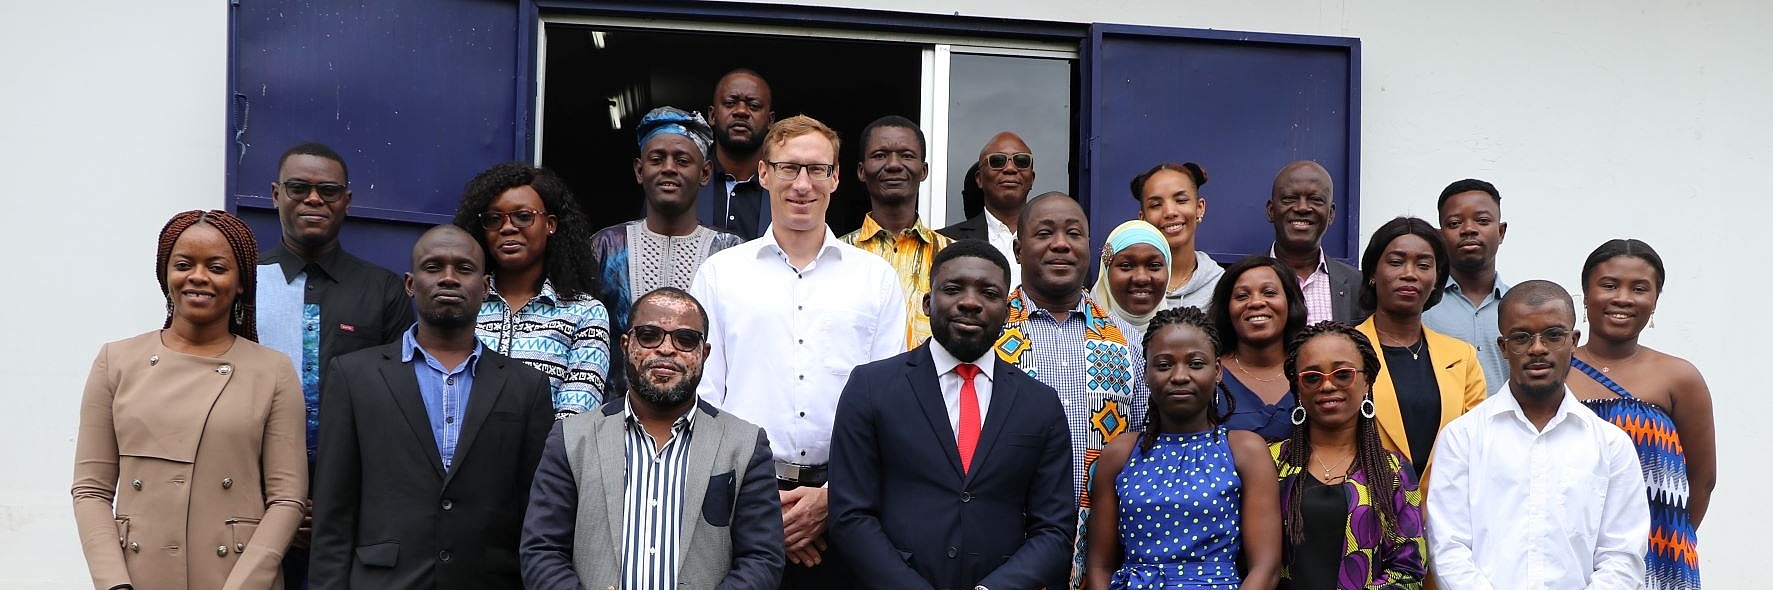 Gruppenfoto der FES-Mitarbeiter in der Elfenbeinküste